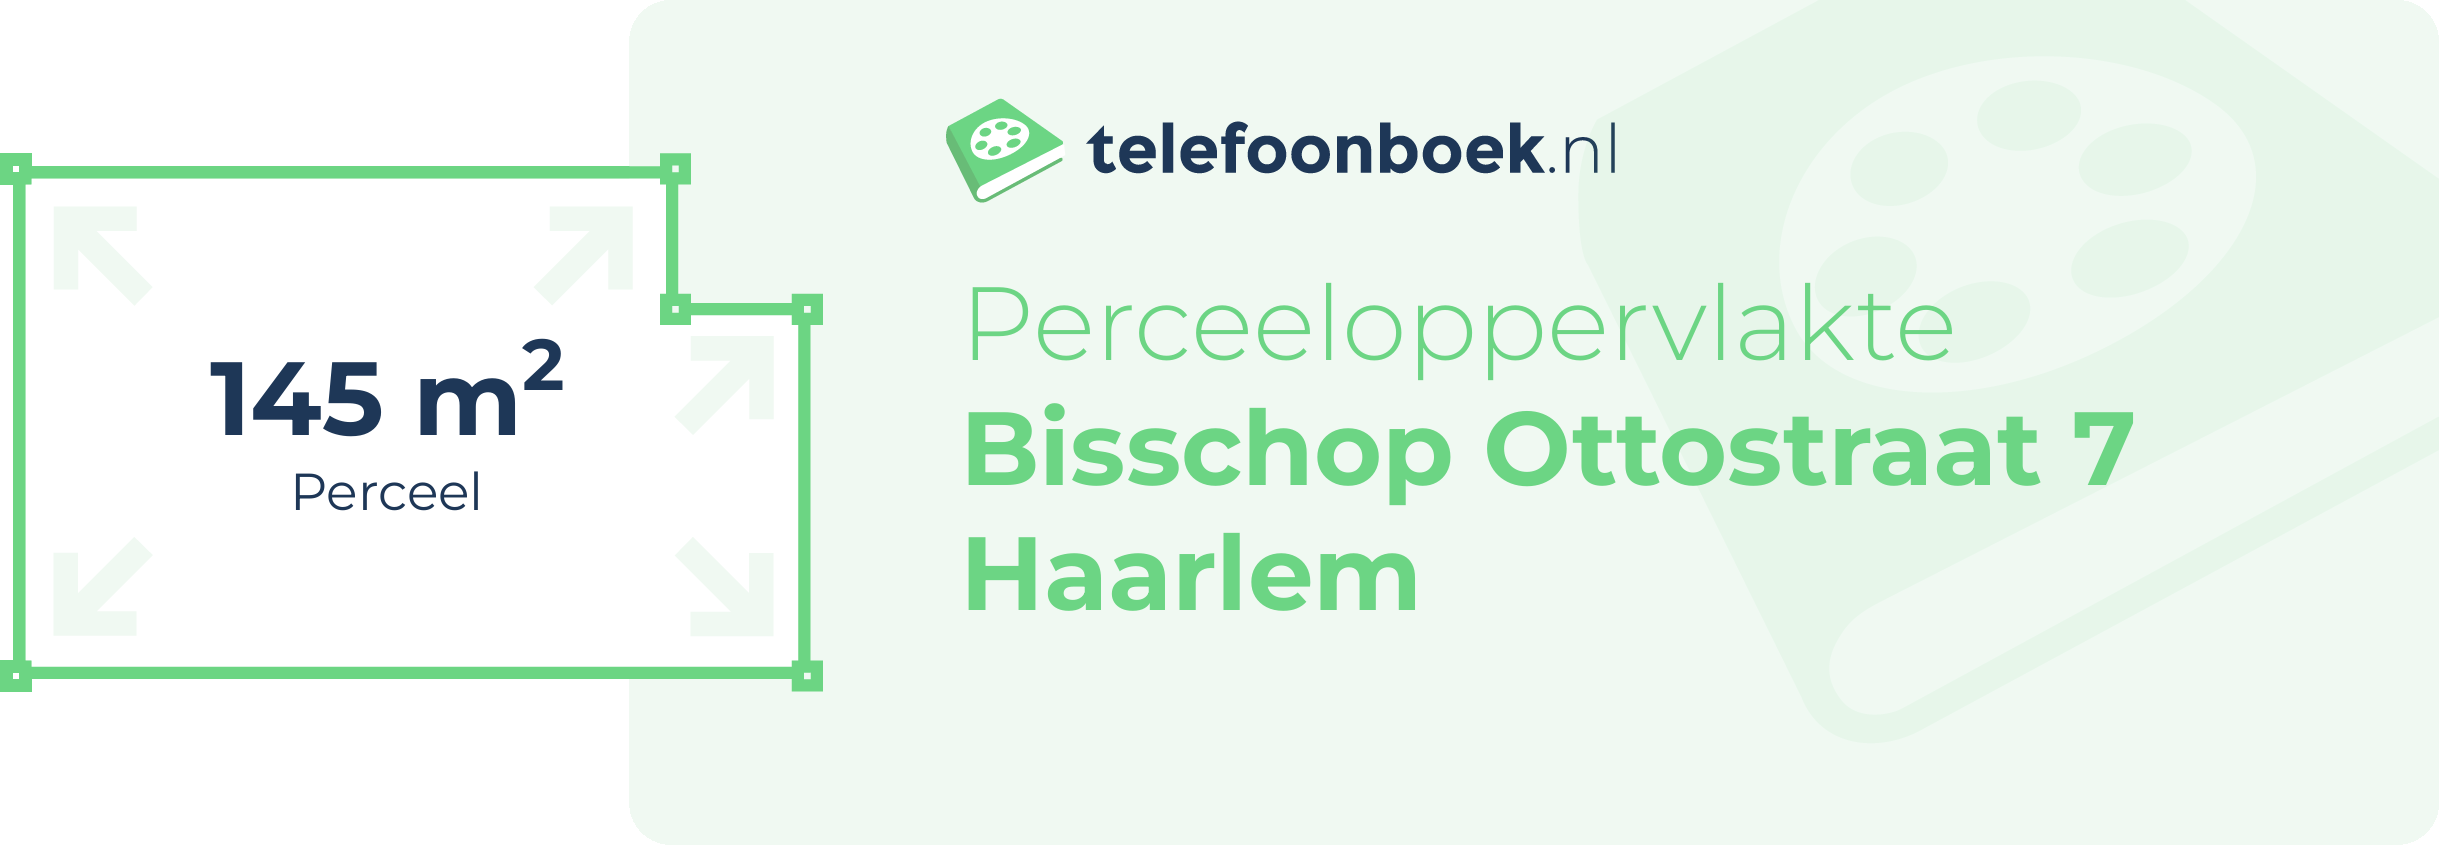 Perceeloppervlakte Bisschop Ottostraat 7 Haarlem